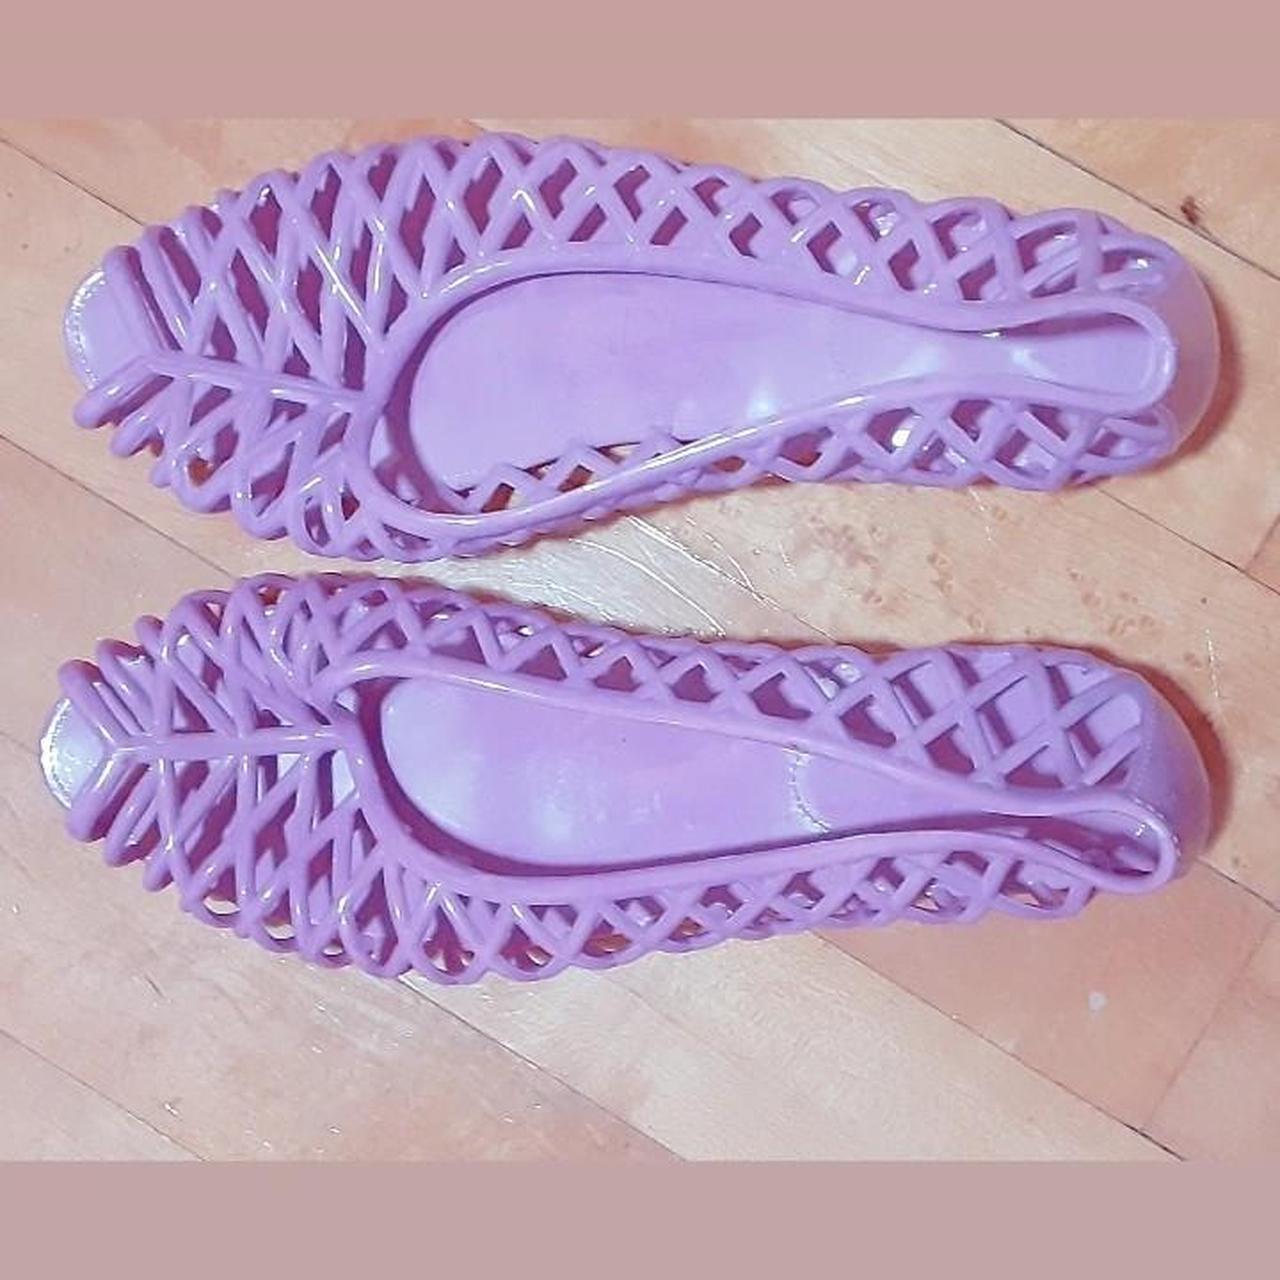 Jelly shoes as seen on Lana Del Rey in... - Depop